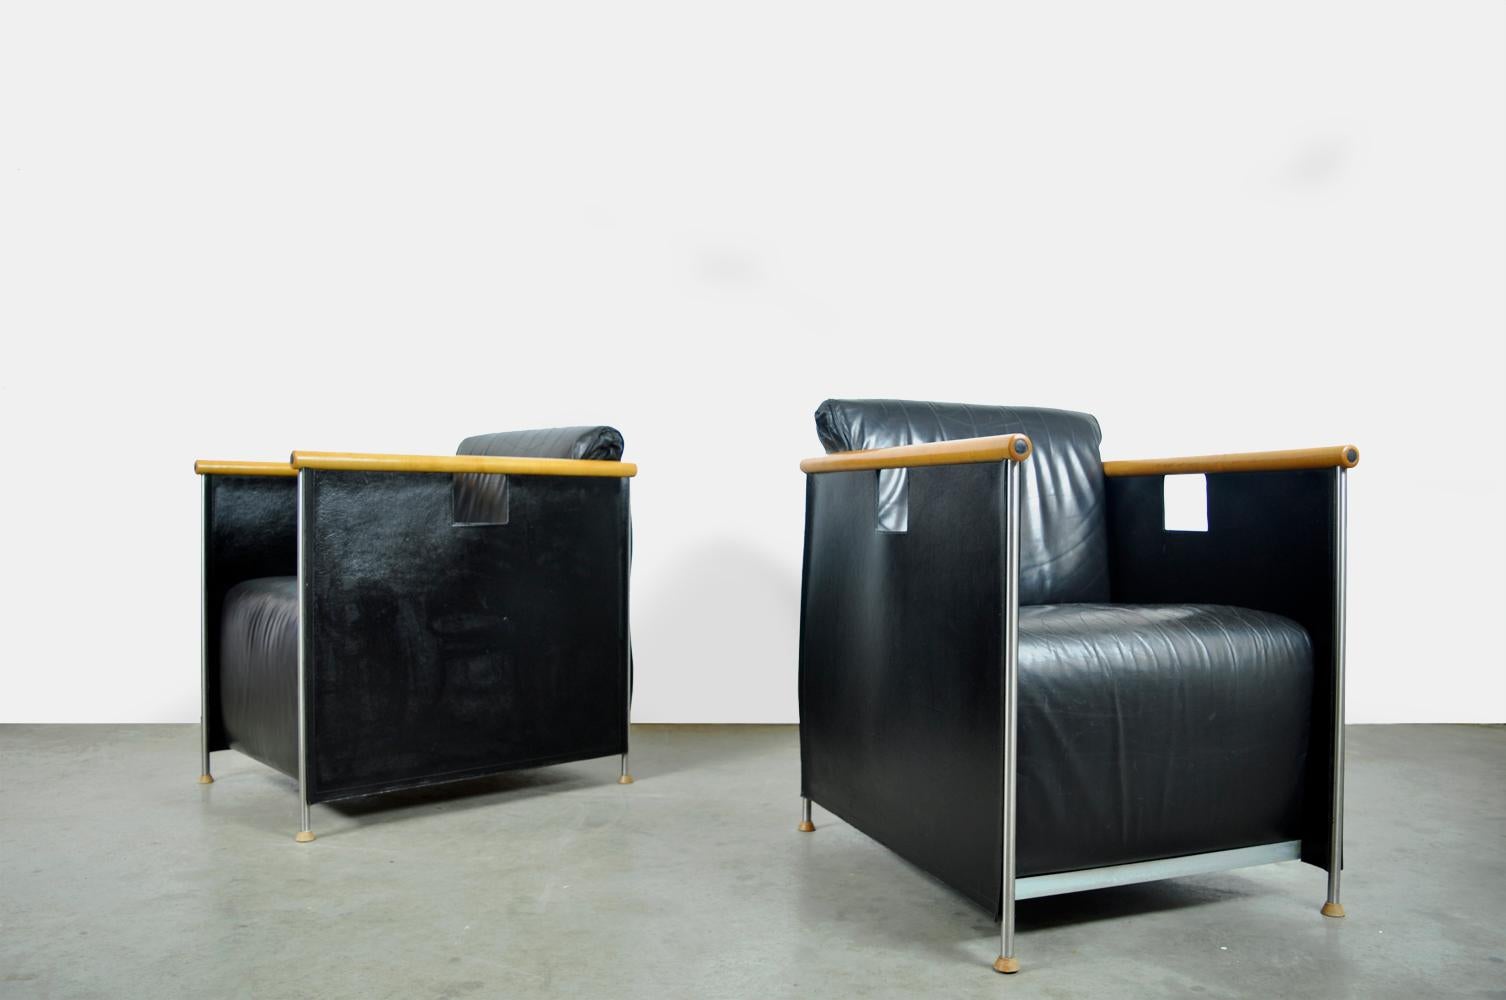 Ledersessel, entworfen von dem Duo Mazairac & boonzaaijer und in den 1980er Jahren von Castelijn in den Niederlanden hergestellt.
Moderne Sessel aus den 1980er Jahren mit schwarzen Lederkissen, Armlehnen aus Buche, schlanken Metallbeinen mit